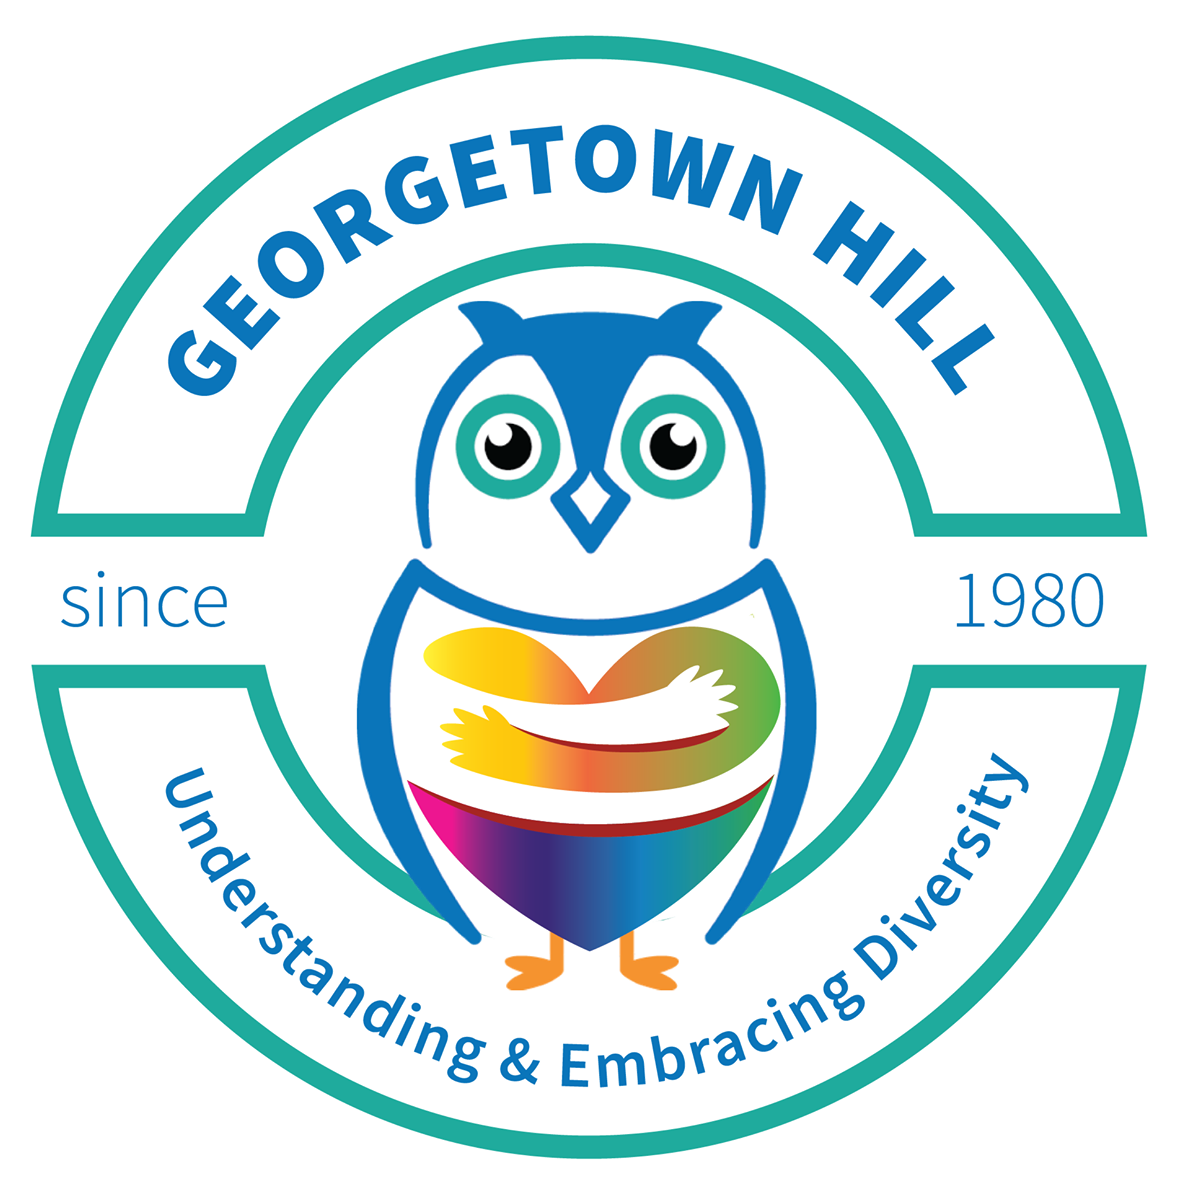 Georgetown Hill Early School